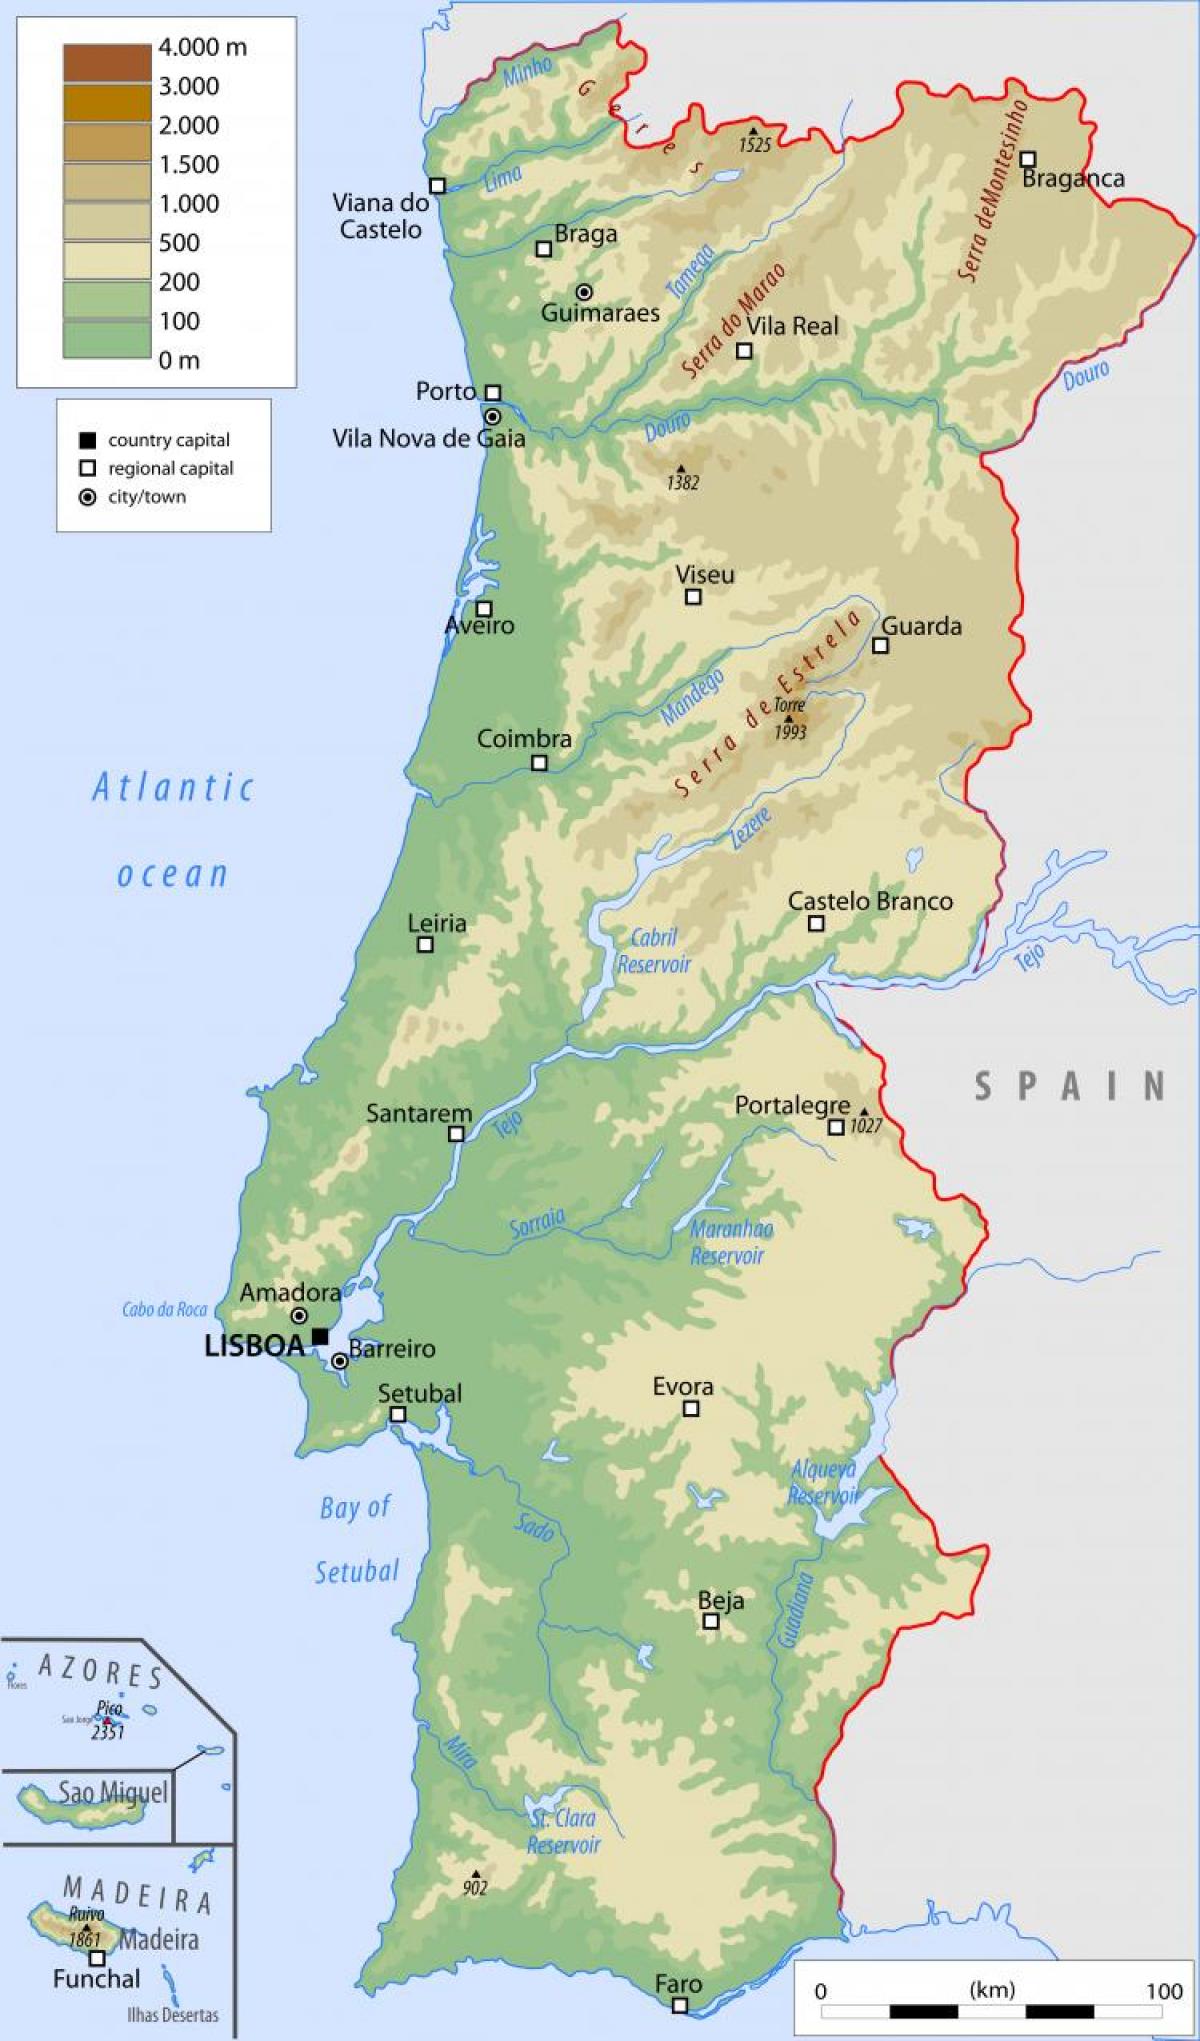 Mapa de Portugal con las principales ciudades